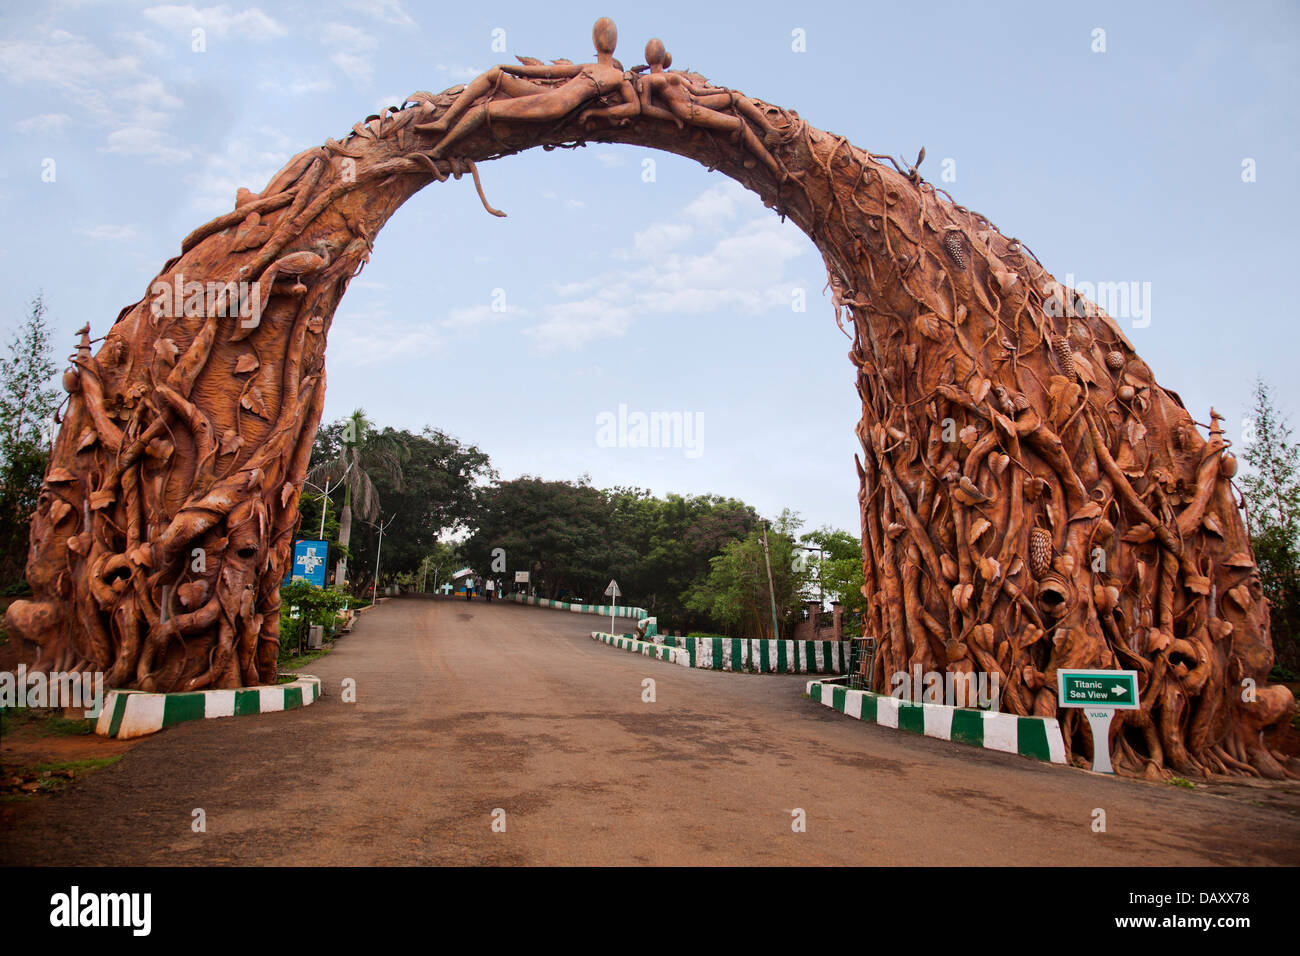 Archway sculptés avec les sculptures humaines à l'entrée du parc, Kailasagiri Park, Visakhapatnam, Andhra Pradesh, Inde Banque D'Images